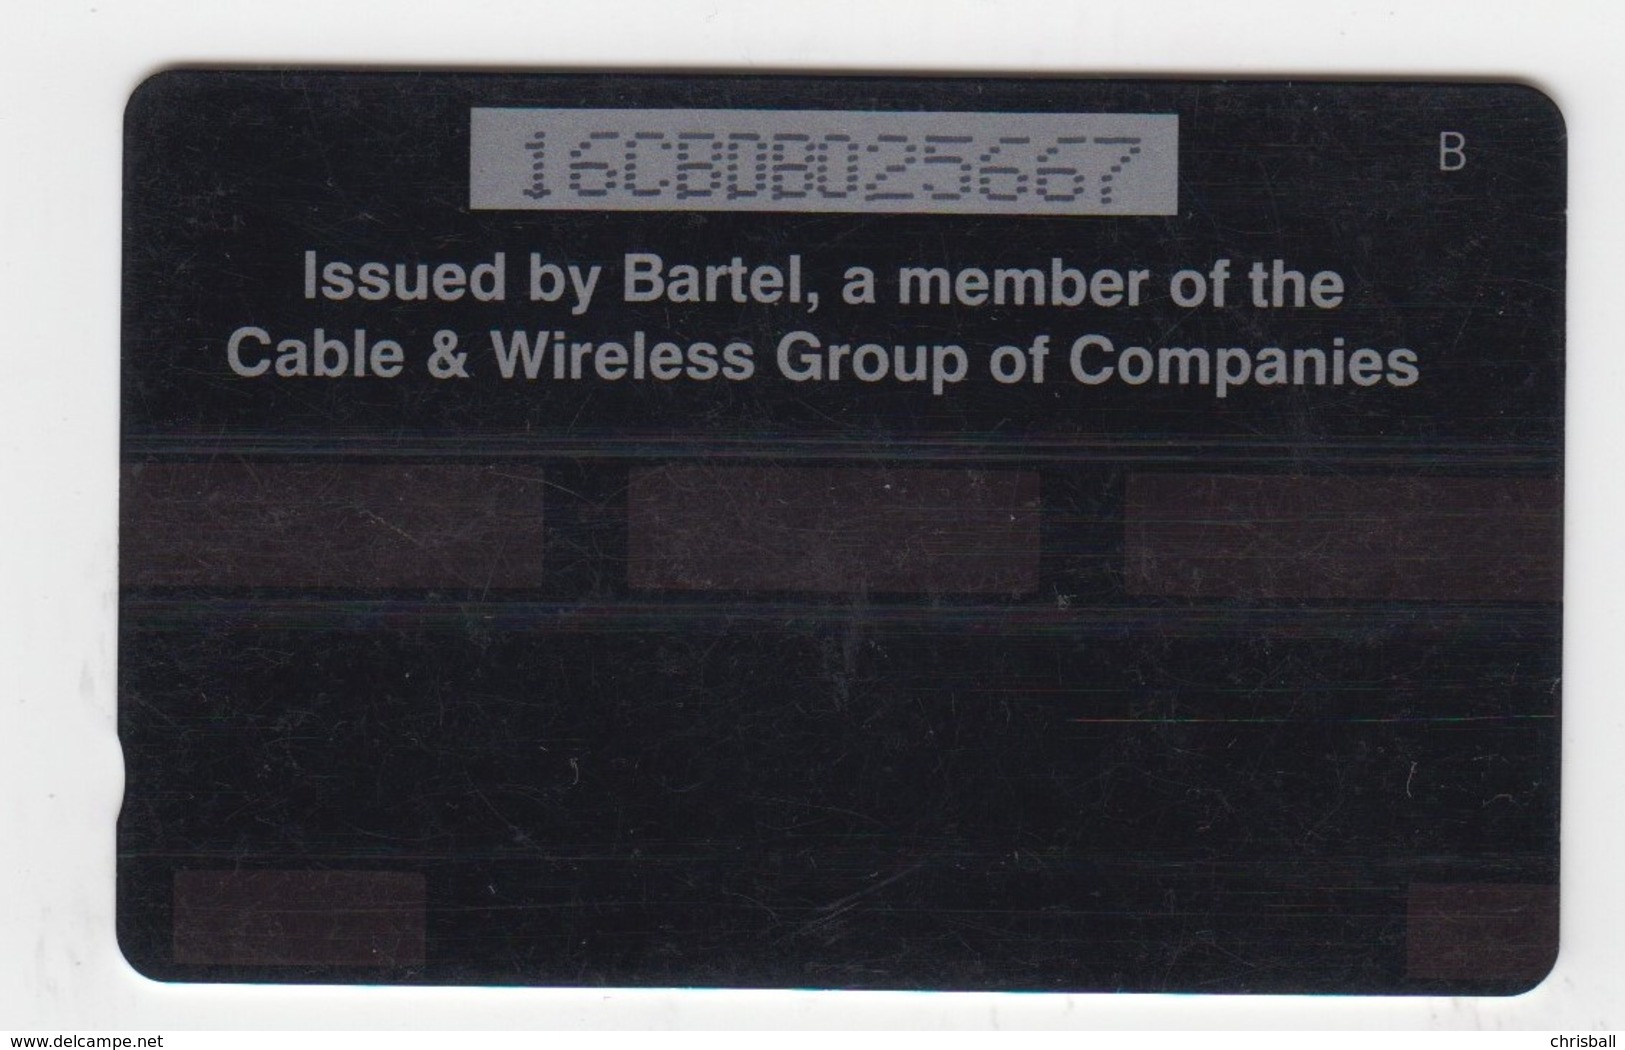 Barbados GPT Phonecard (Fine Used) Code 16CBDB - Barbados (Barbuda)